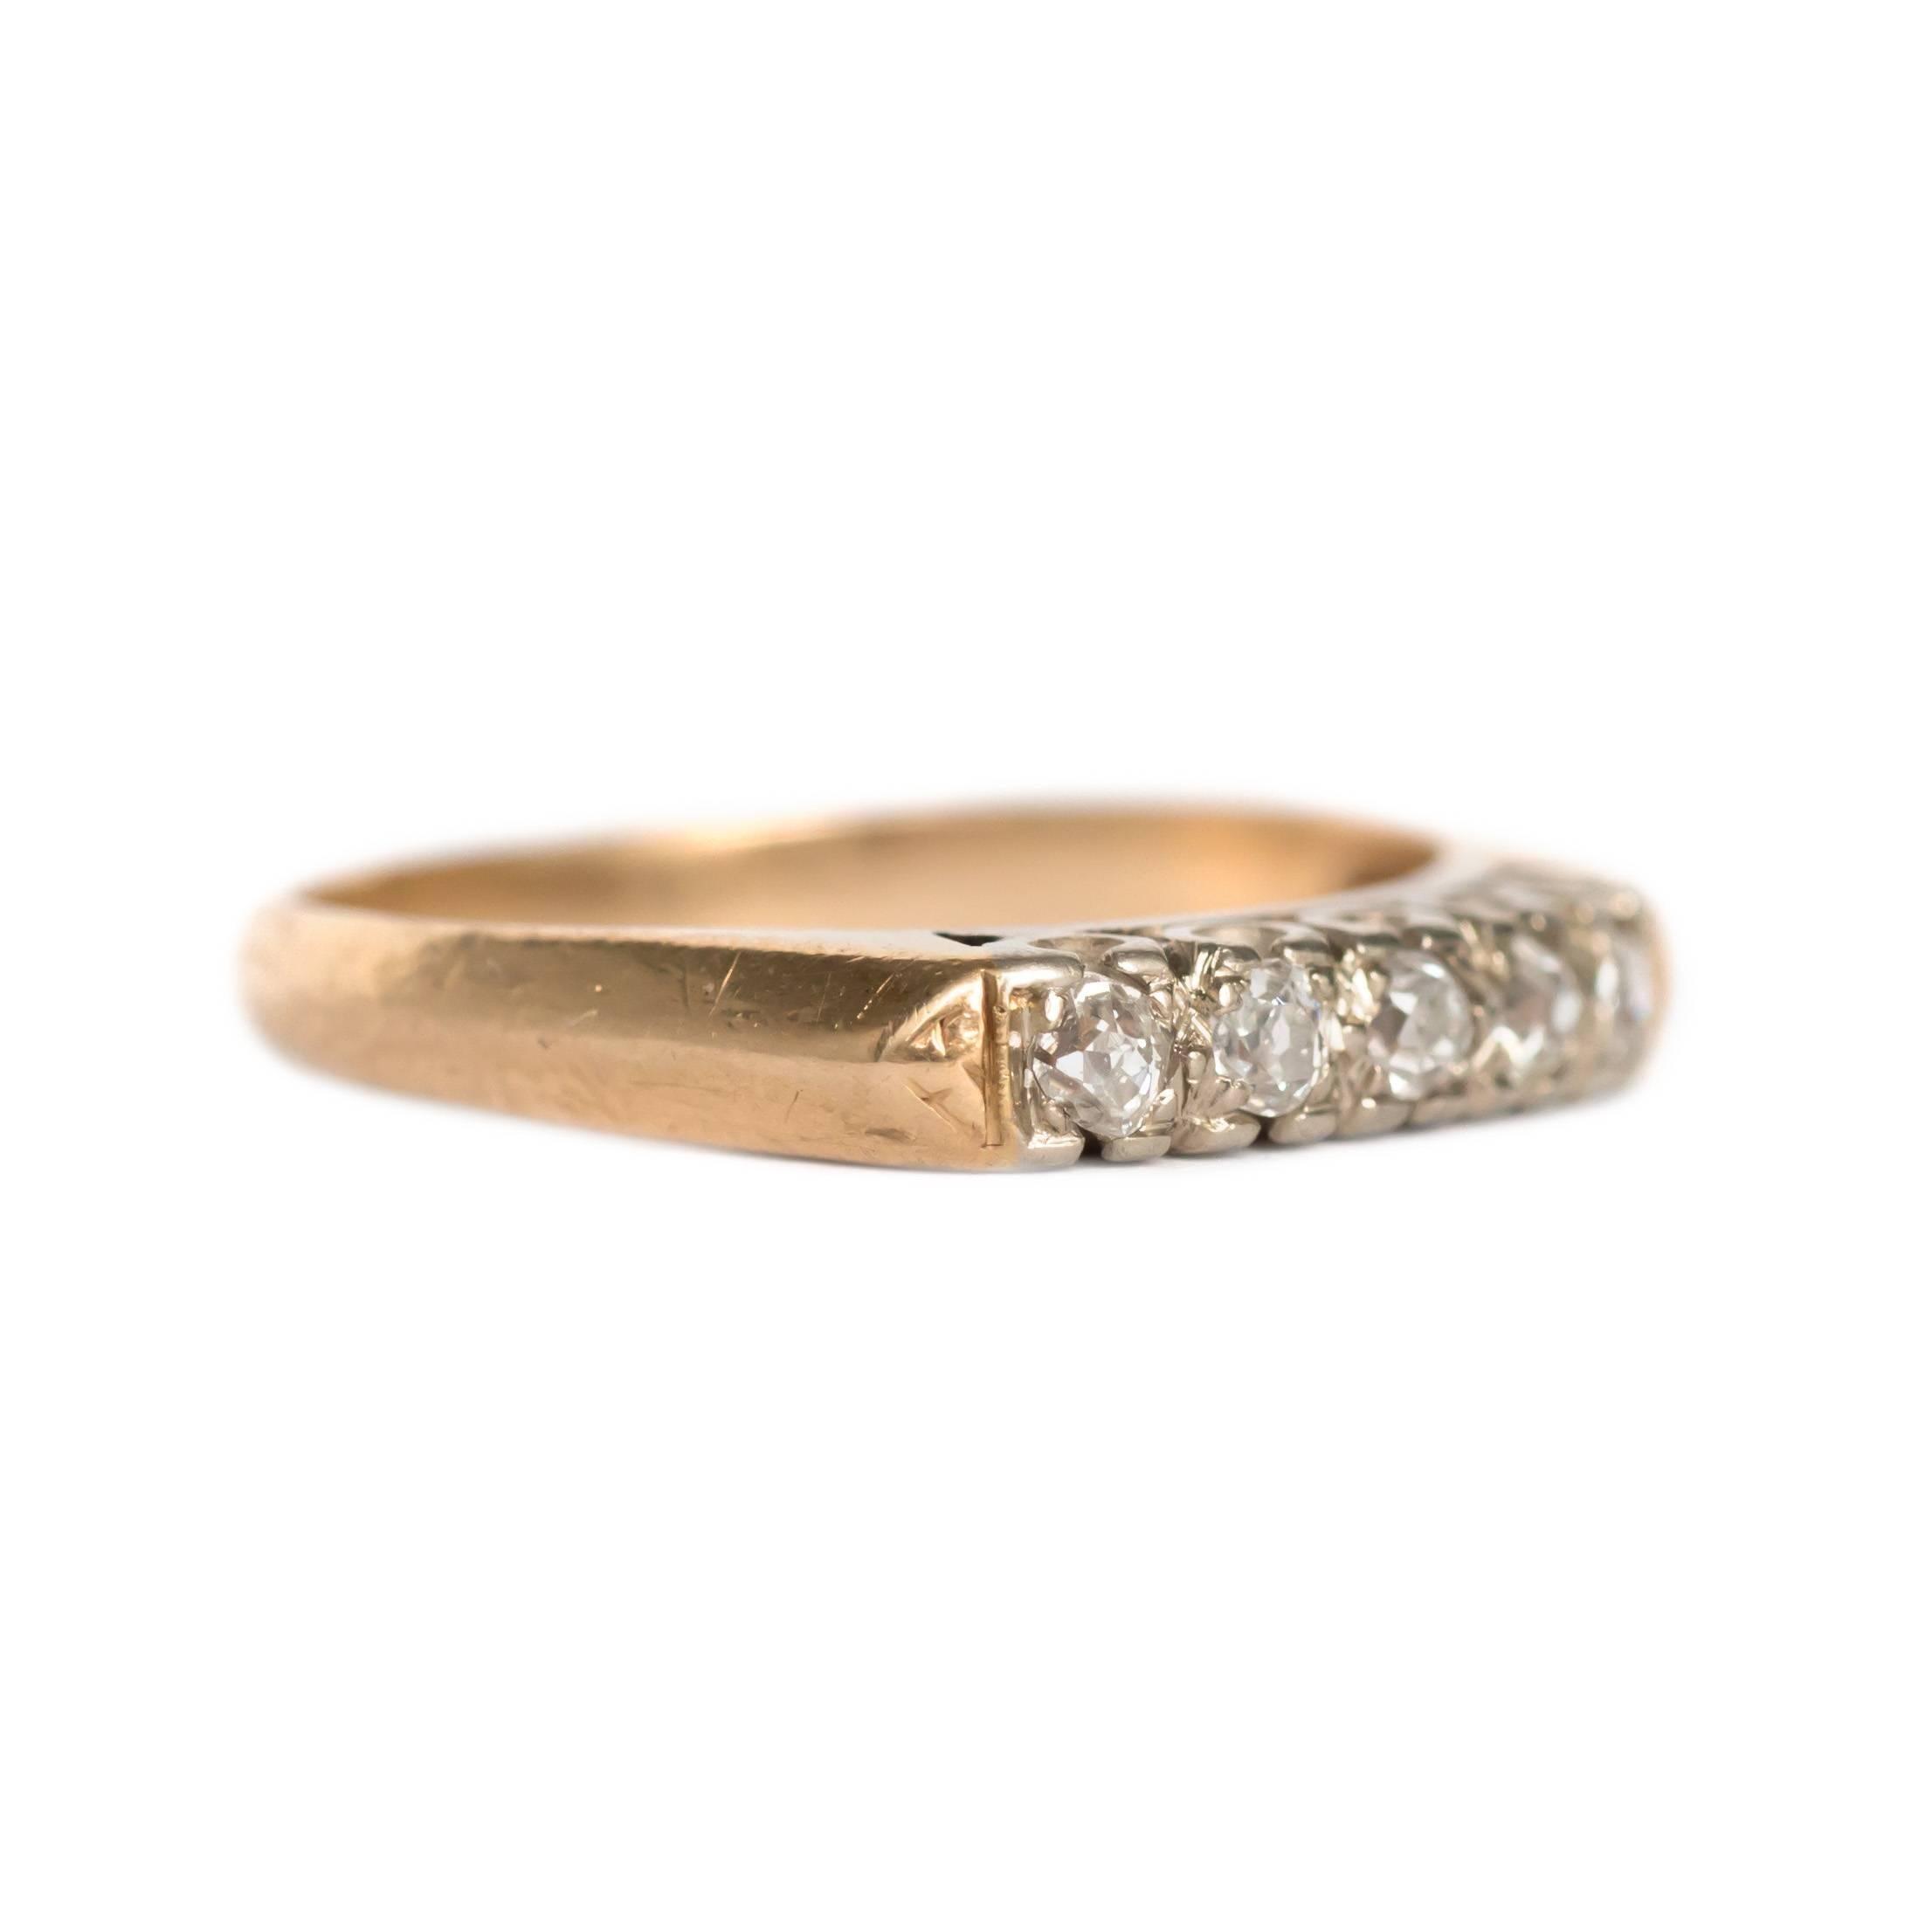 15 carat wedding ring